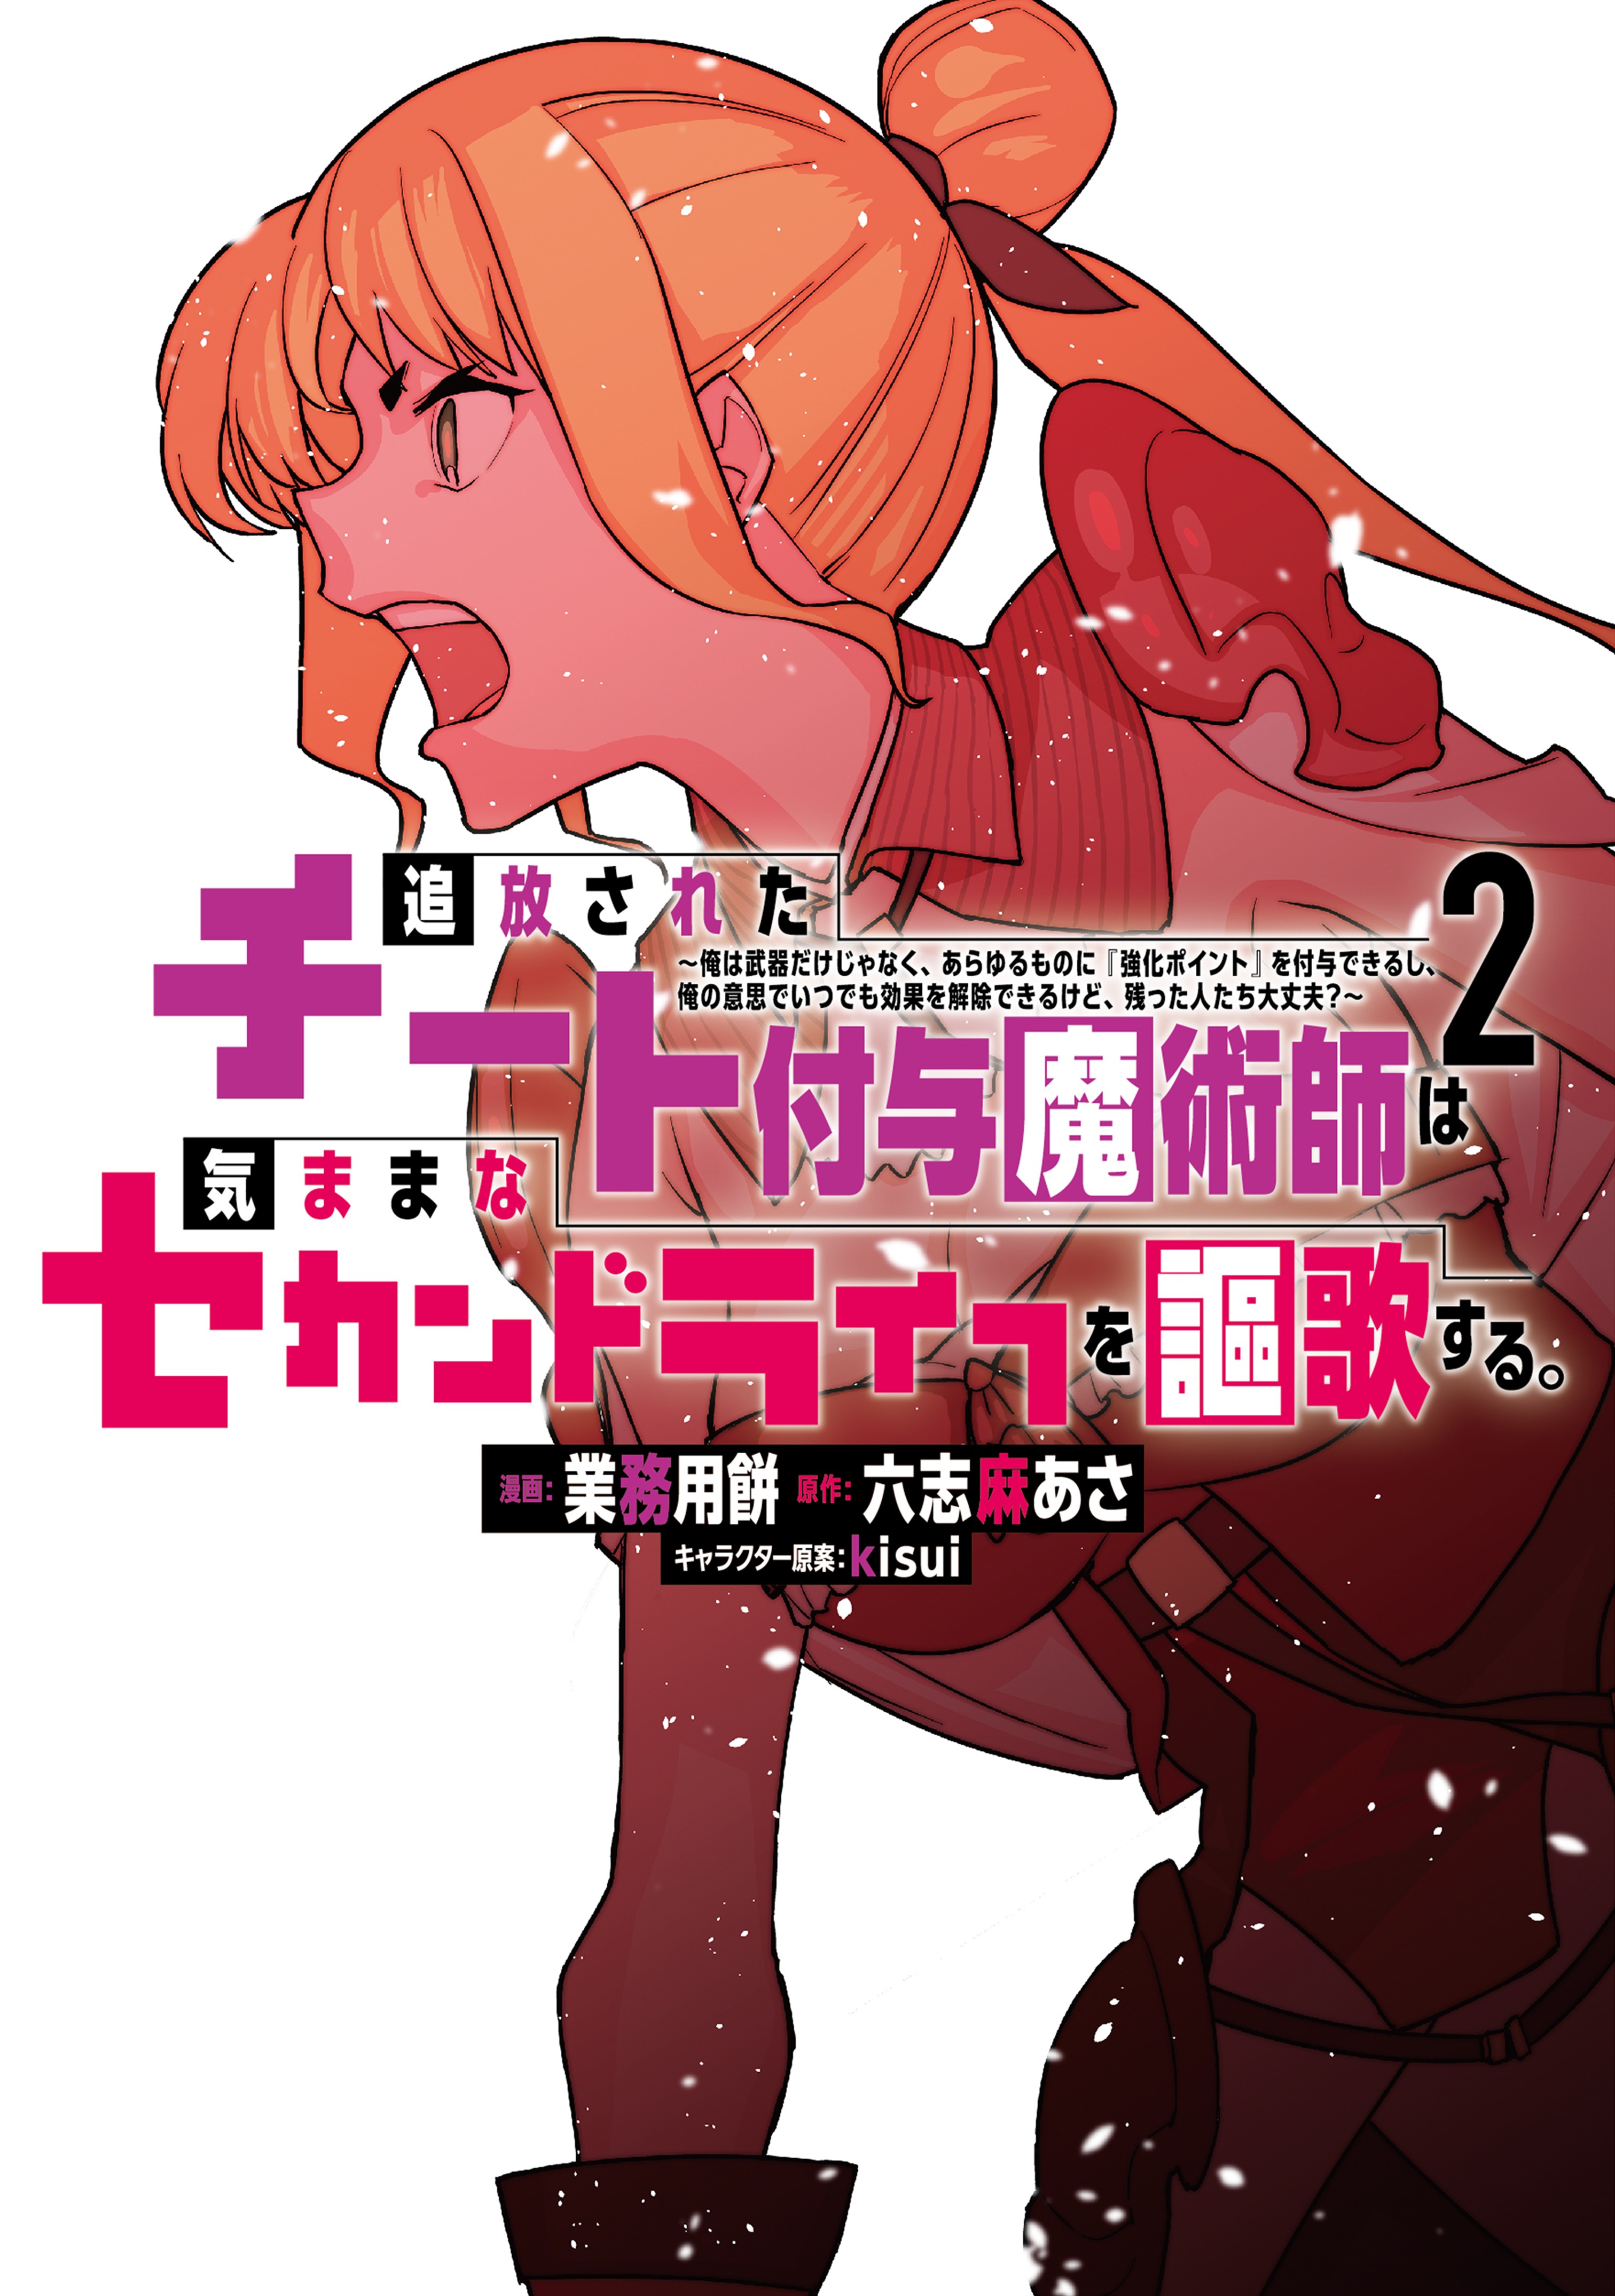 Read Daiya No A - Act Ii Chapter 3 : Overflow on Mangakakalot